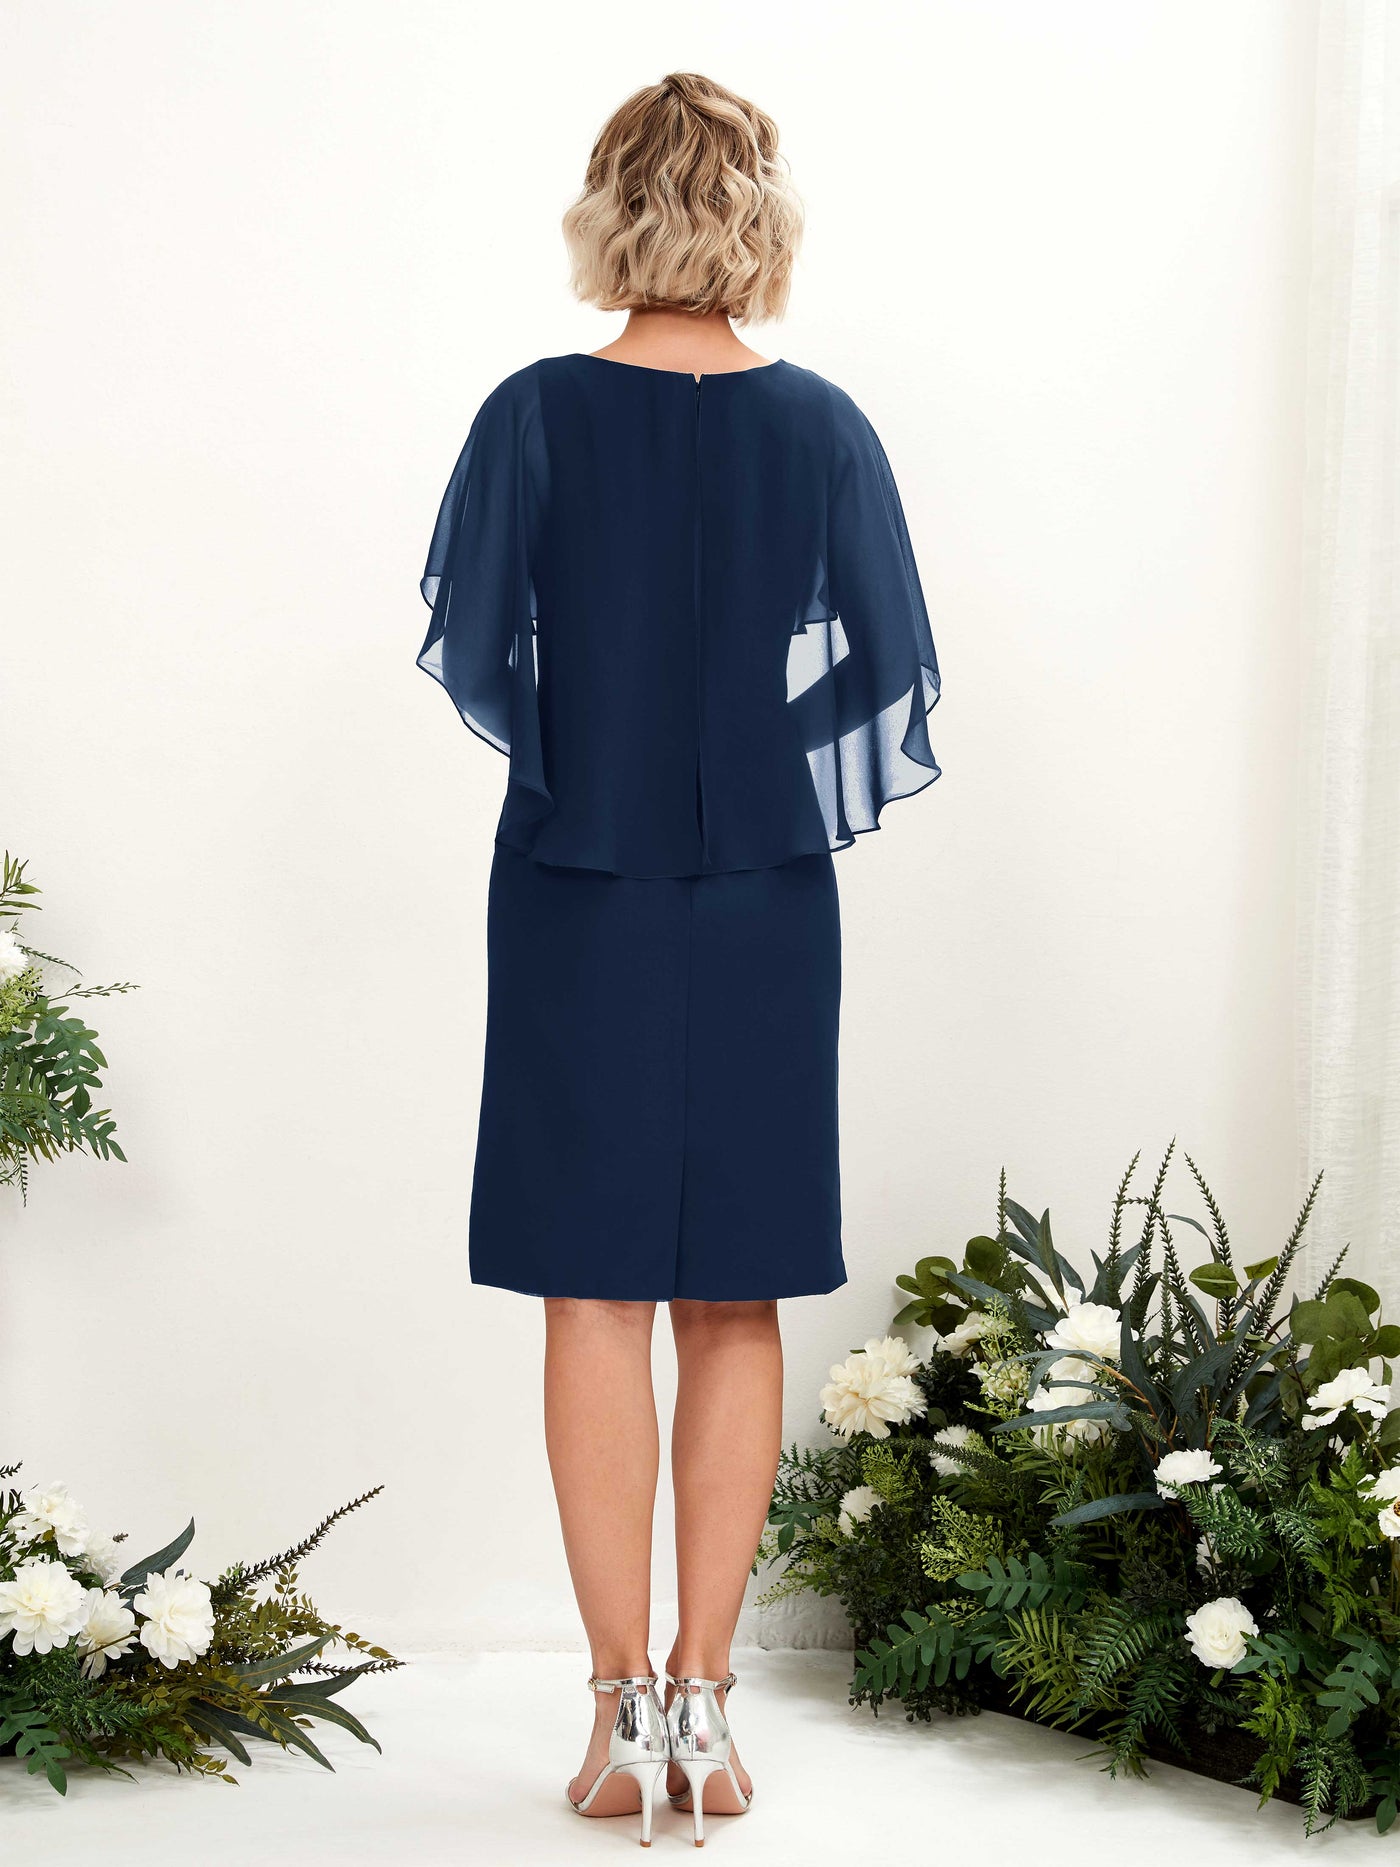 V-neck Short Sleeves Chiffon Bridesmaid Dress (81224013)#color_navy